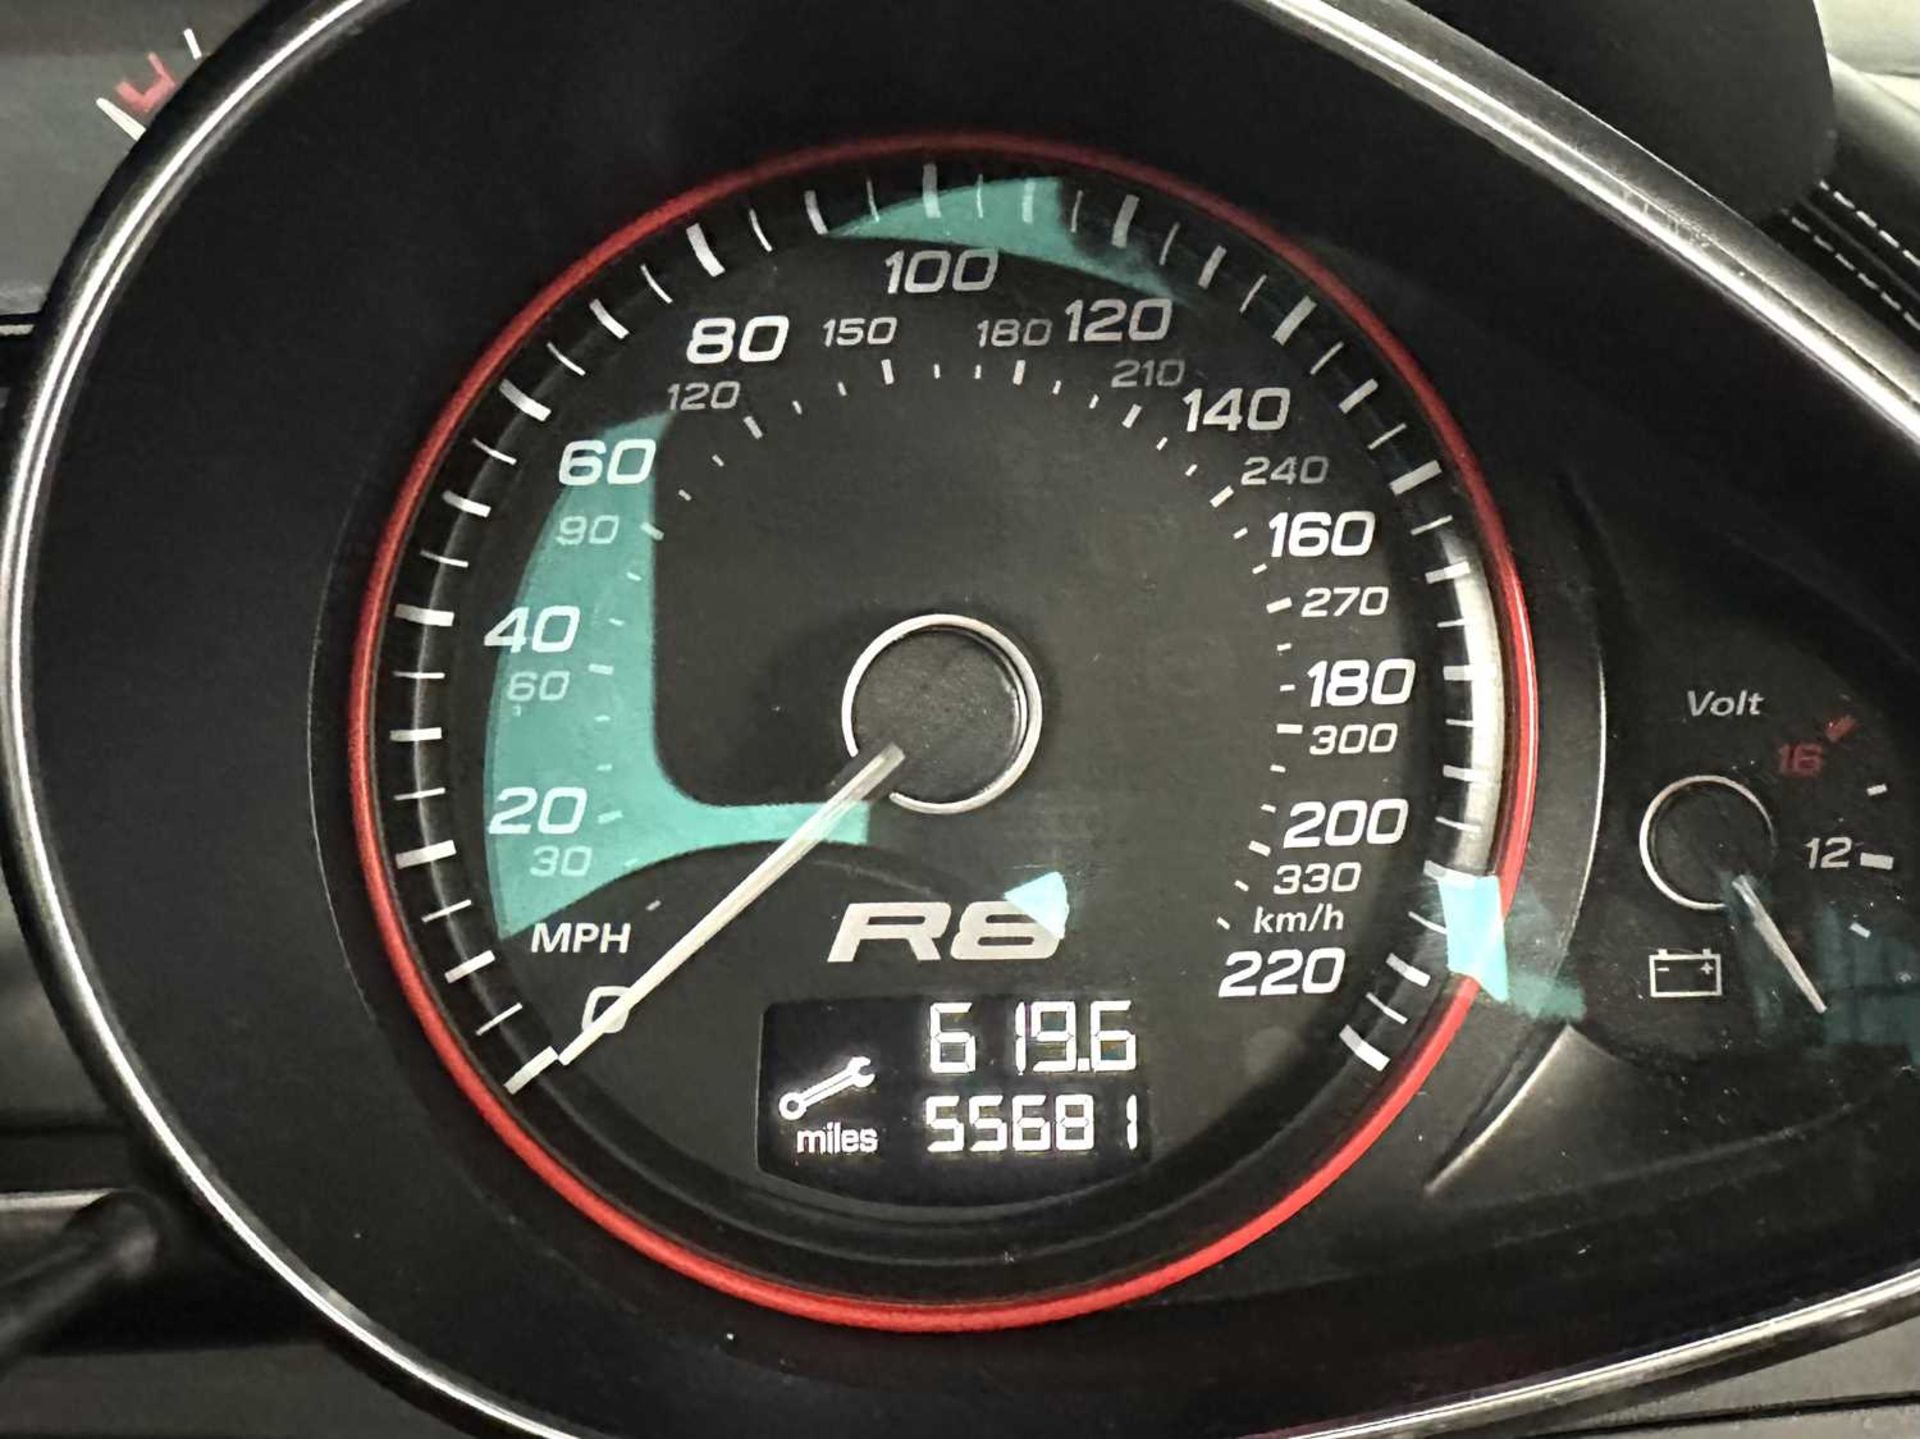 2010 Audi R8 Spyder - Image 21 of 33